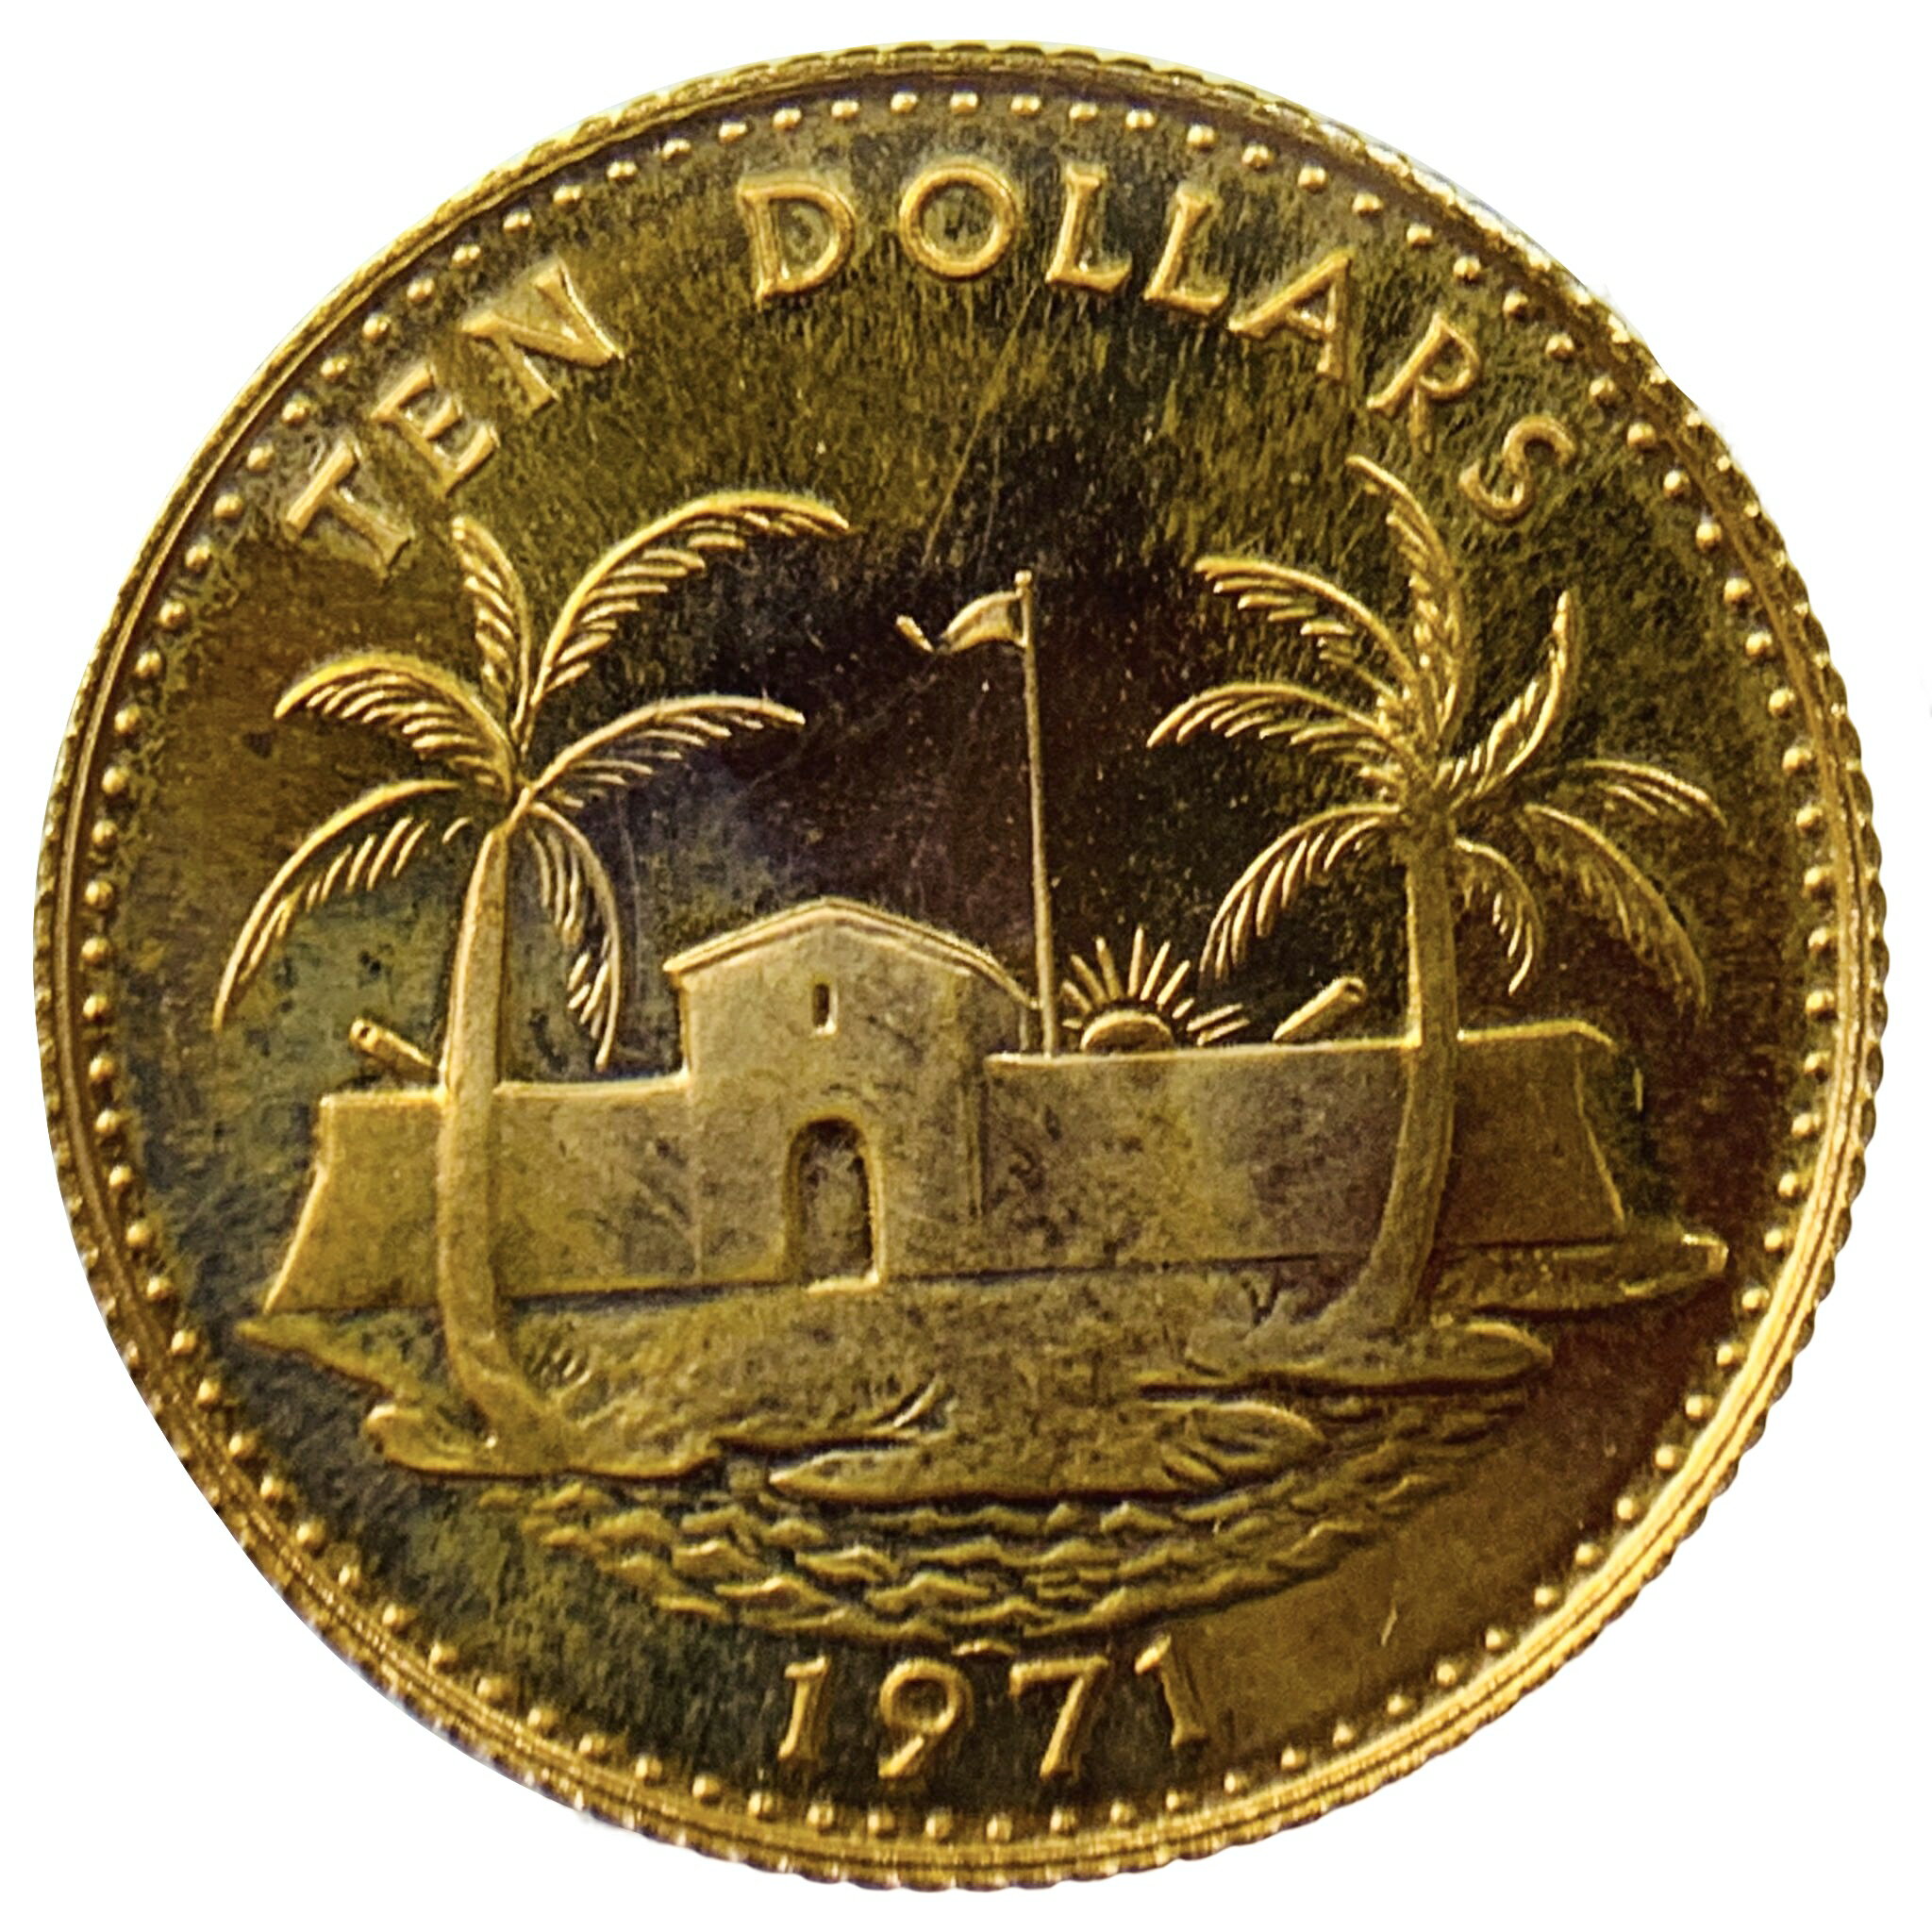 バハマ諸島 10ドル金貨 エリザベス女王二世 20ドル K22 1971年 3.9g イエローゴールド コイン GOLD コレクション 美品